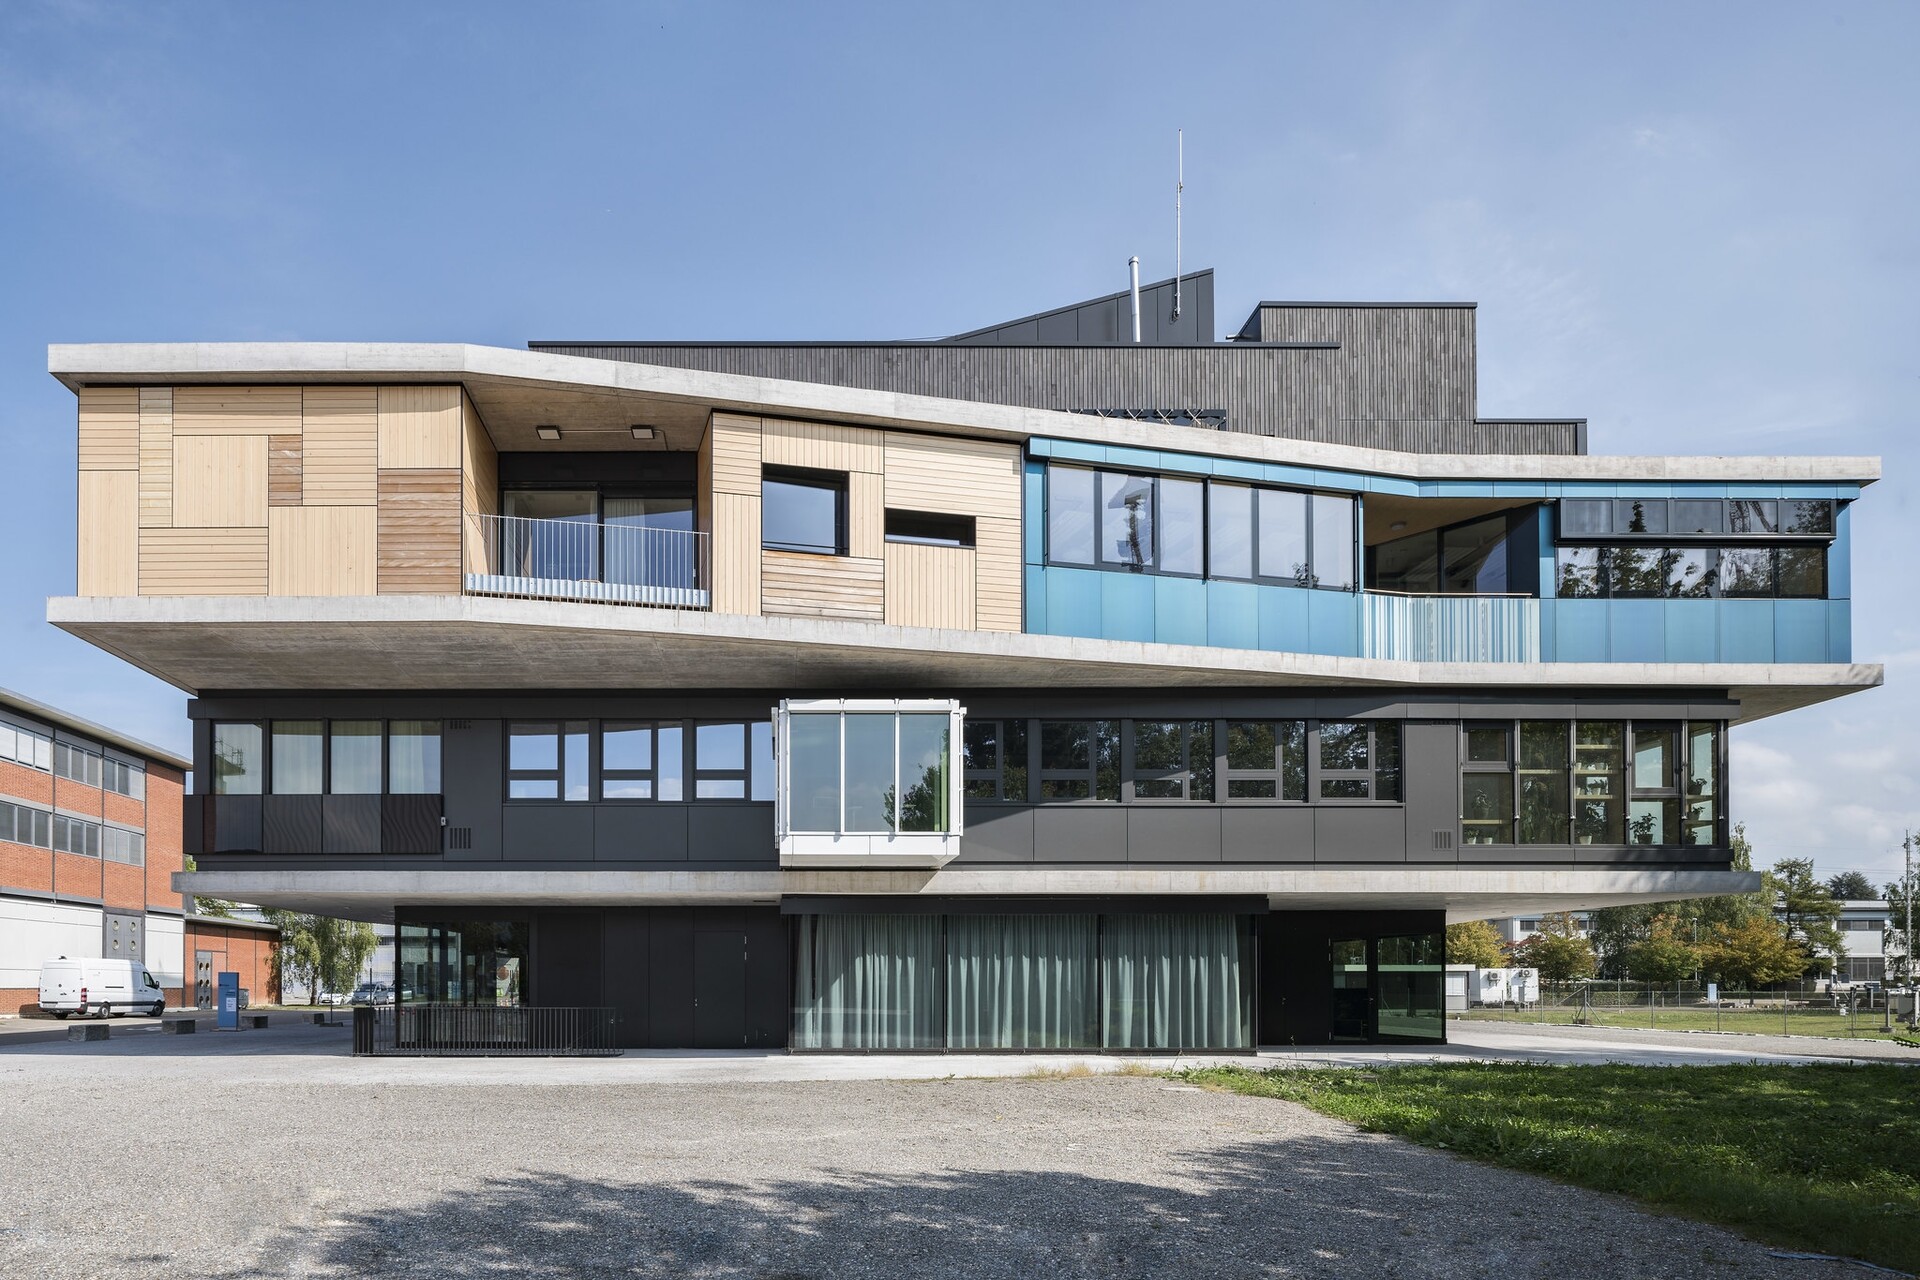 έξυπνη θέρμανση: το κτίριο NEST (ακρωνύμιο για το Next Evolution in Sustainable Building Technologies) στεγάζει τα κεντρικά γραφεία των ομοσπονδιακών ινστιτούτων EMPA και EAWAG στο Dübendorf στο καντόνι της Ζυρίχης και είναι το πρώτο κτίριο στον κόσμο που κατασκευάστηκε εξ ολοκλήρου με ψηφιακά εργαλεία (Φωτογραφία: EMPA)